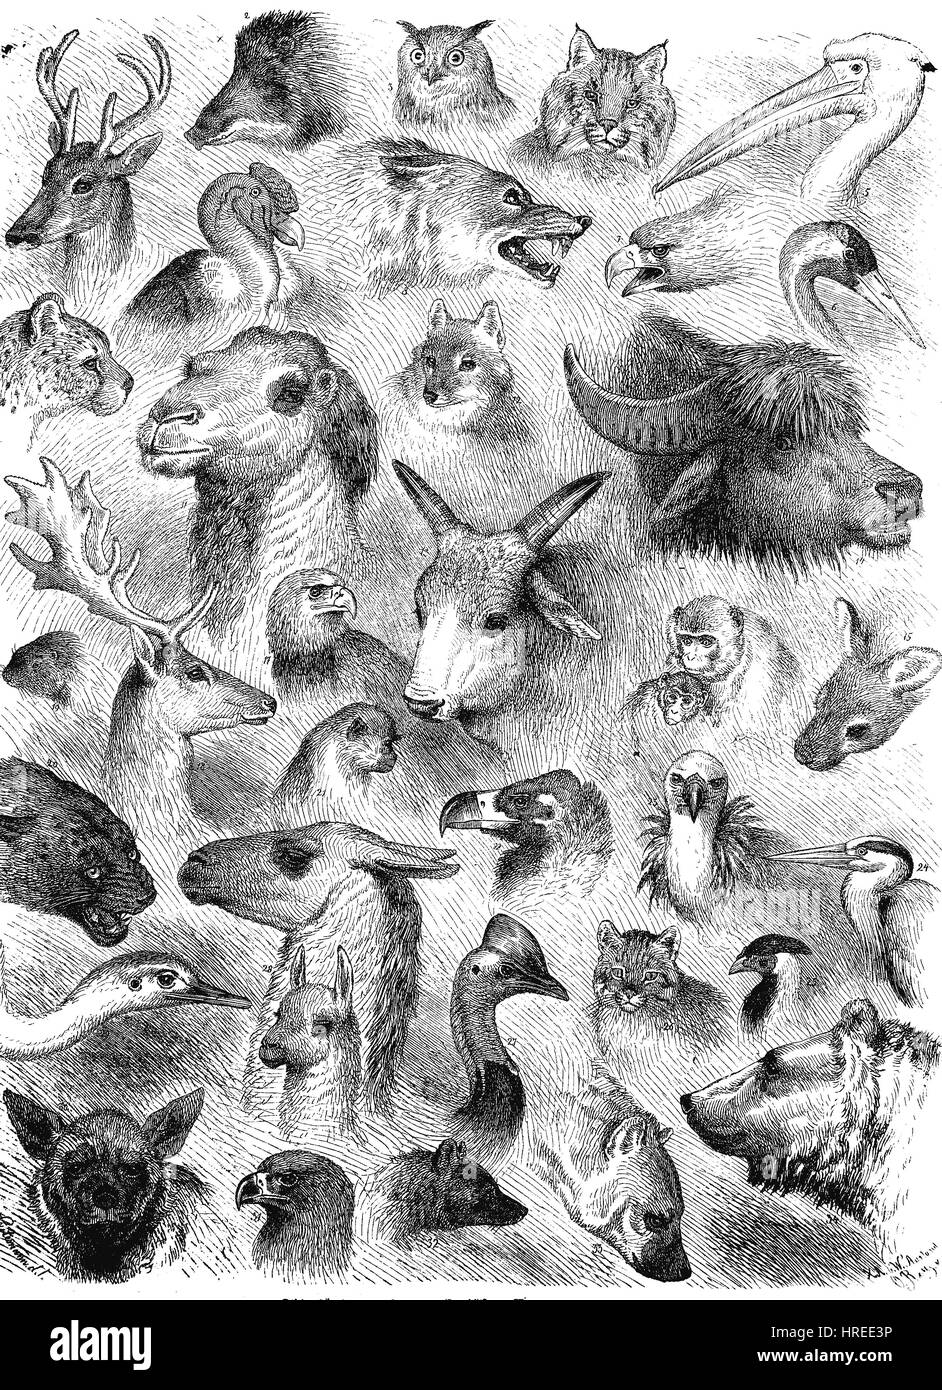 Beaucoup de différentes têtes d'animaux du jardin zoologique de Berlin, un article dans Die Gartenlaube - Feuille - illustré, reproduction d'une gravure sur bois du xixe siècle, 1885 Banque D'Images